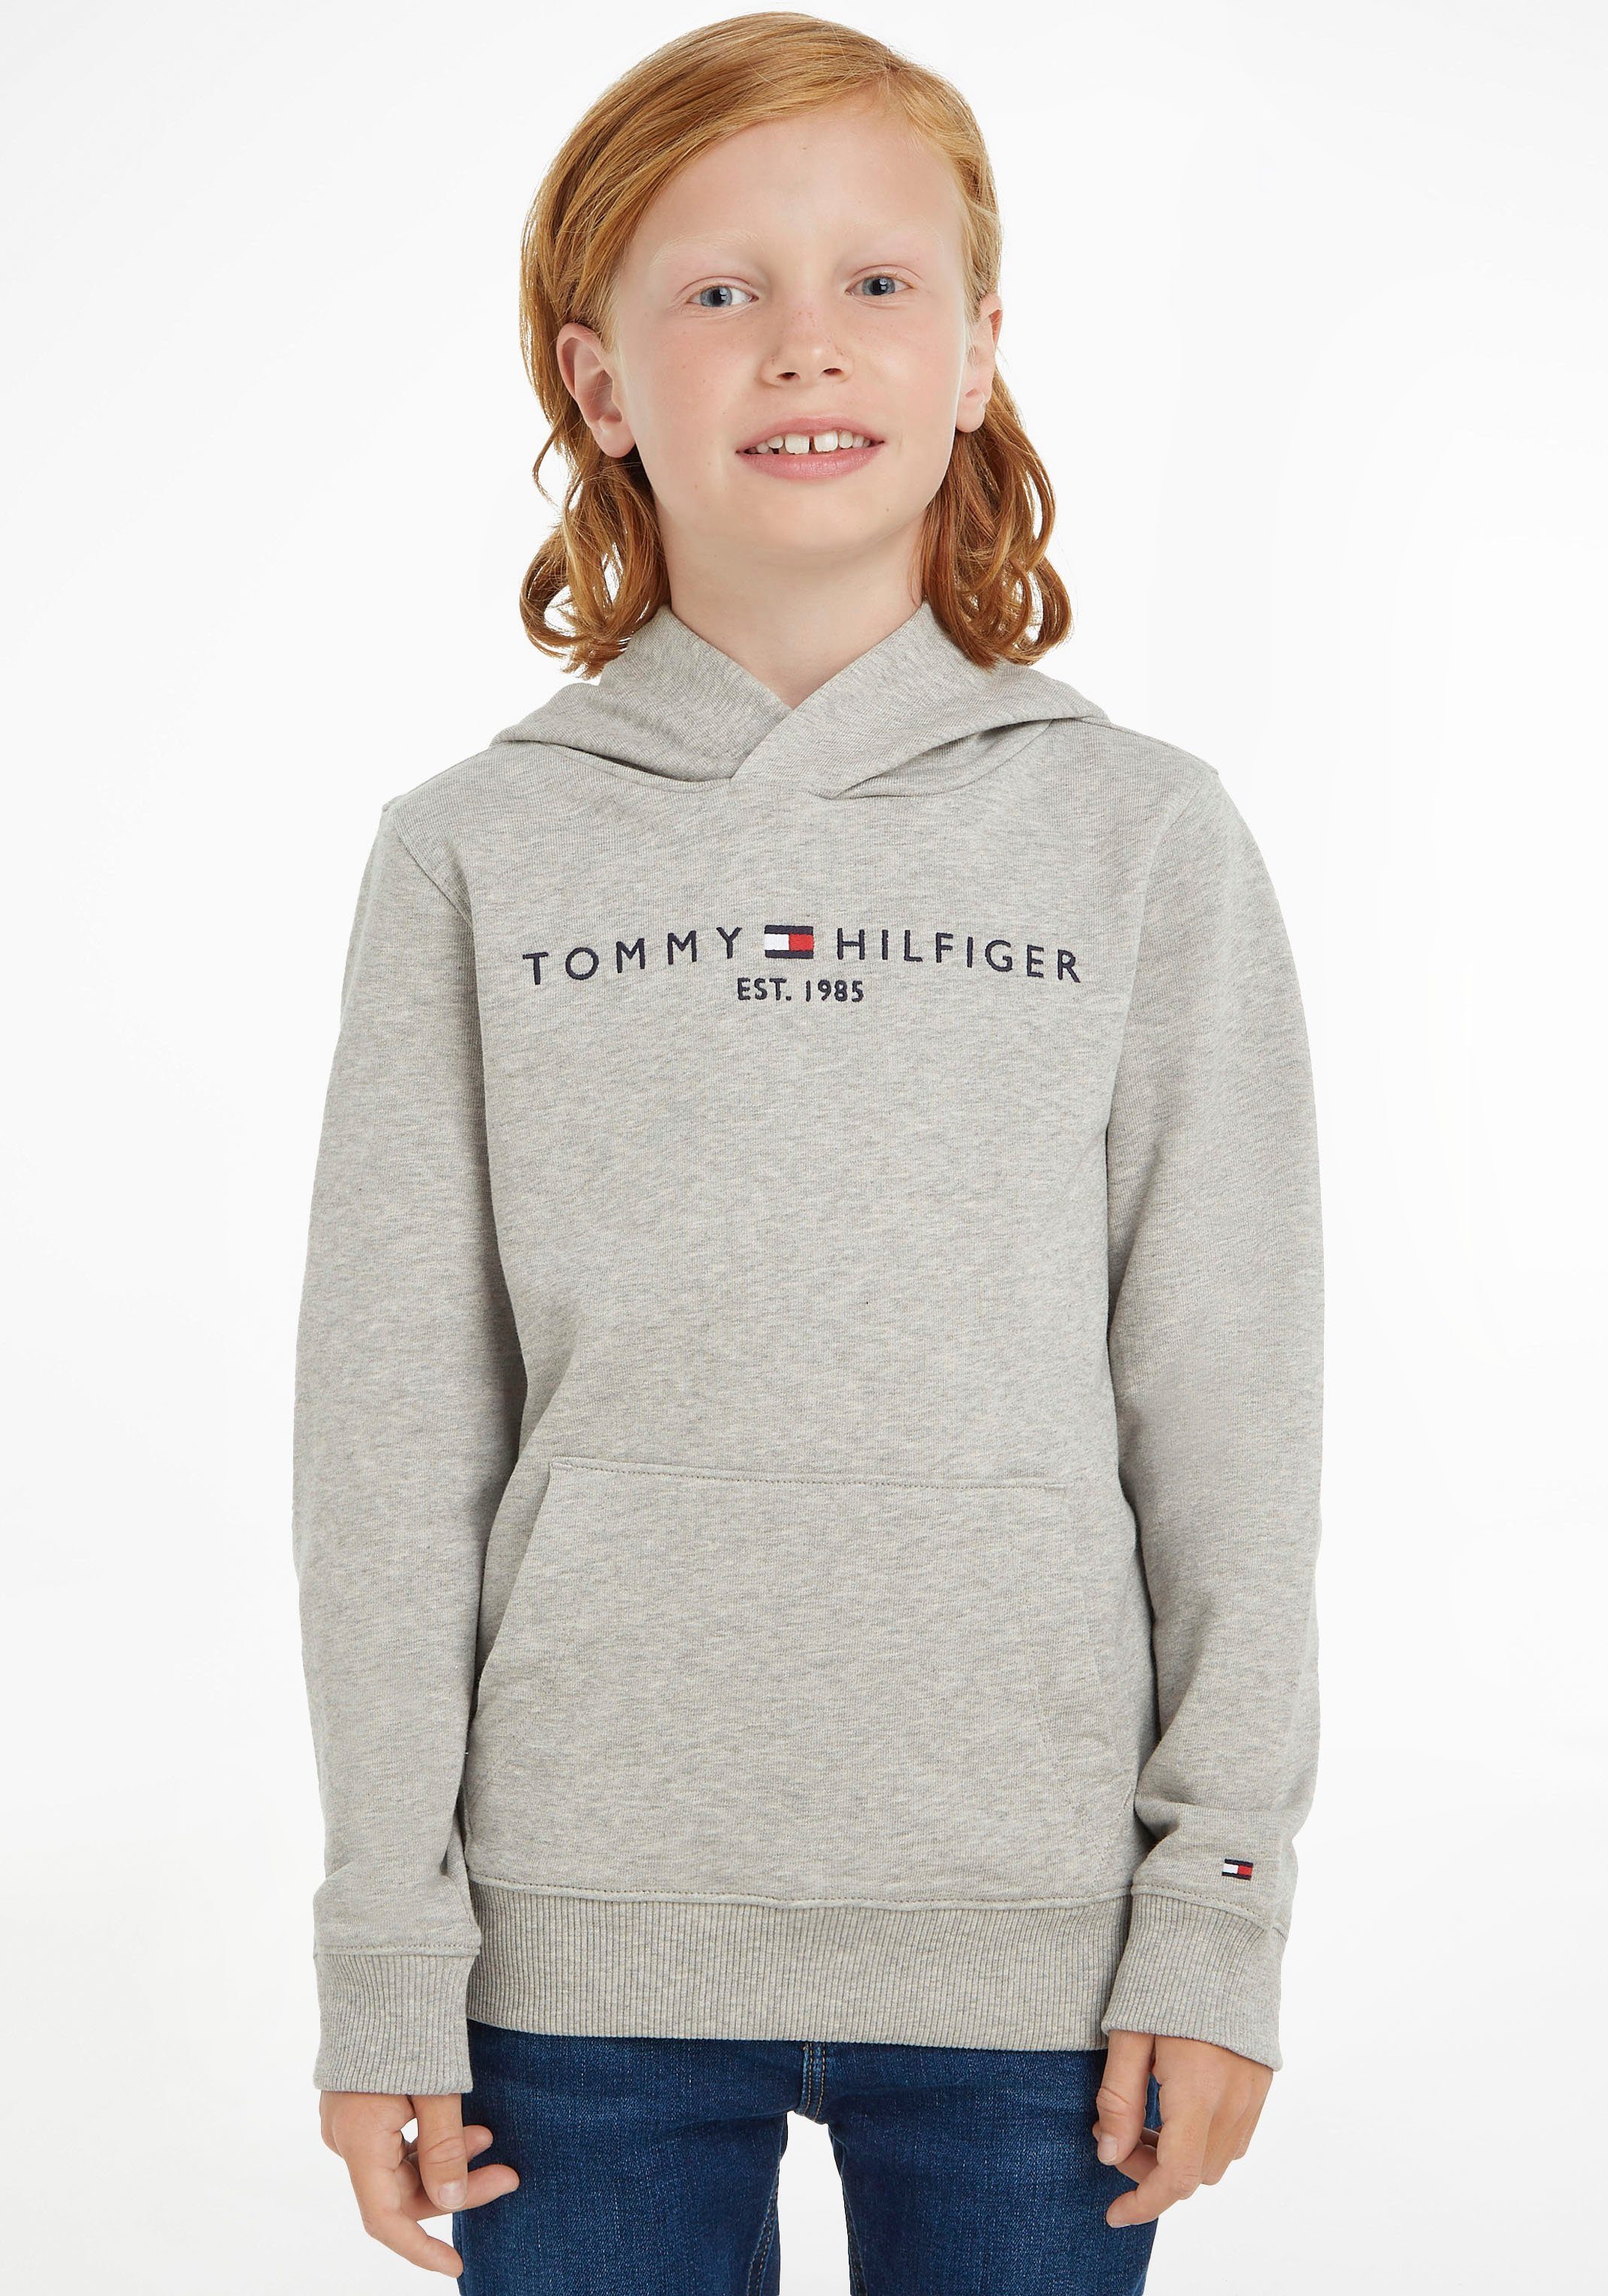 Sweatshirt Jungen von Kapuzensweatshirt Mädchen Jungen HILFIGER HOODIE für und Tommy Hilfiger und für ESSENTIAL TOMMY Mädchen,